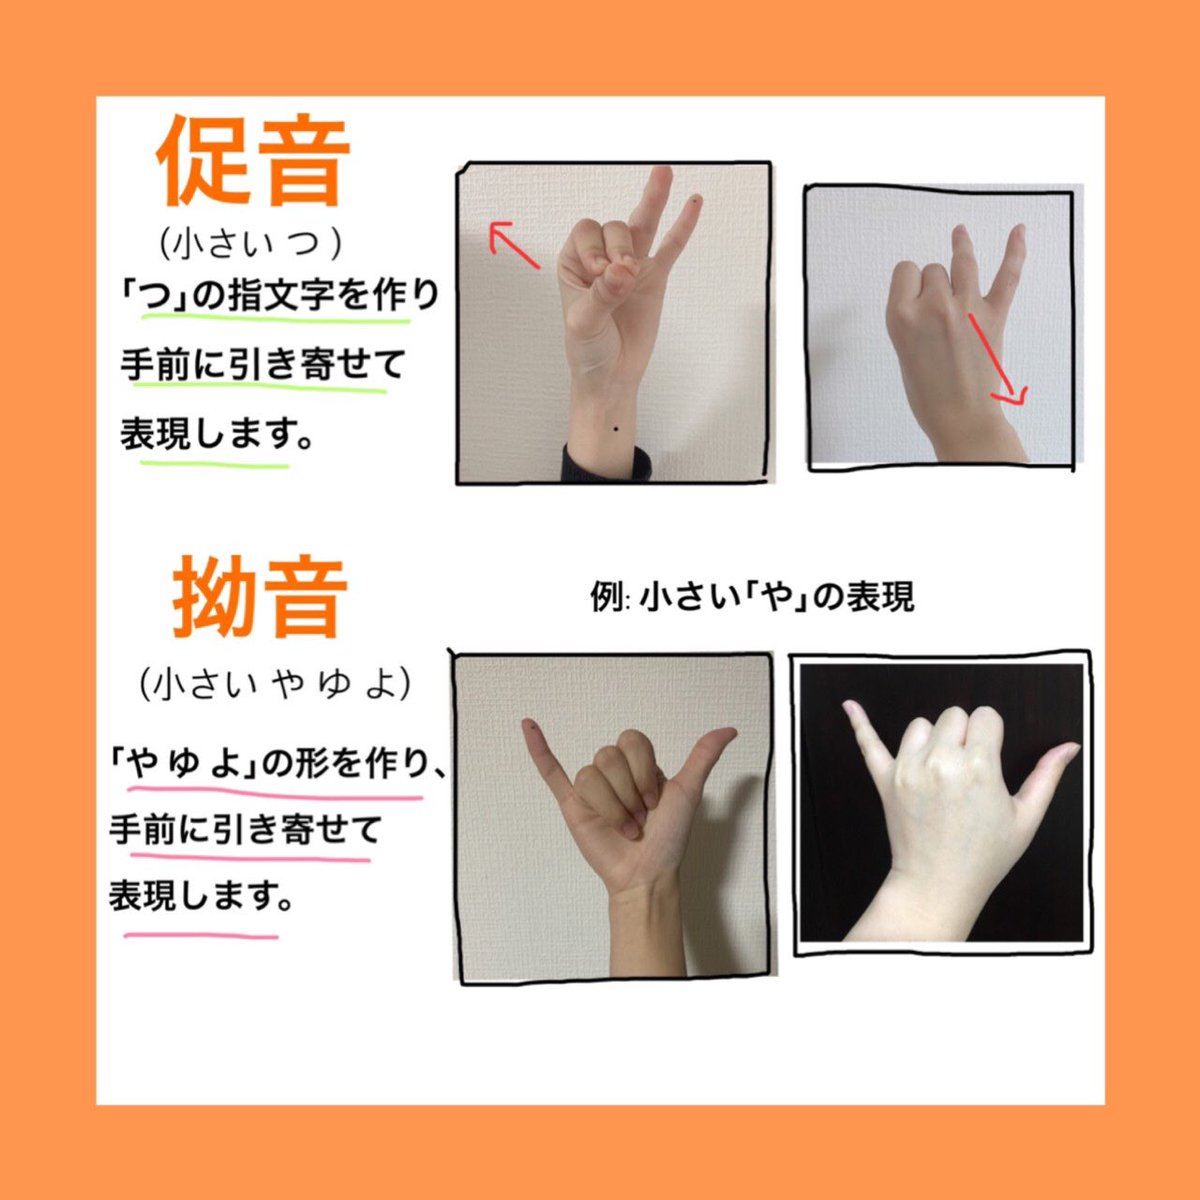 日本福祉大学 部聴覚障害者問題研究会 加絵手 指文字を覚えよう 濁音や半濁音などの表し方です ぜひ 挑戦してみてください 春からnfu 手話サークル